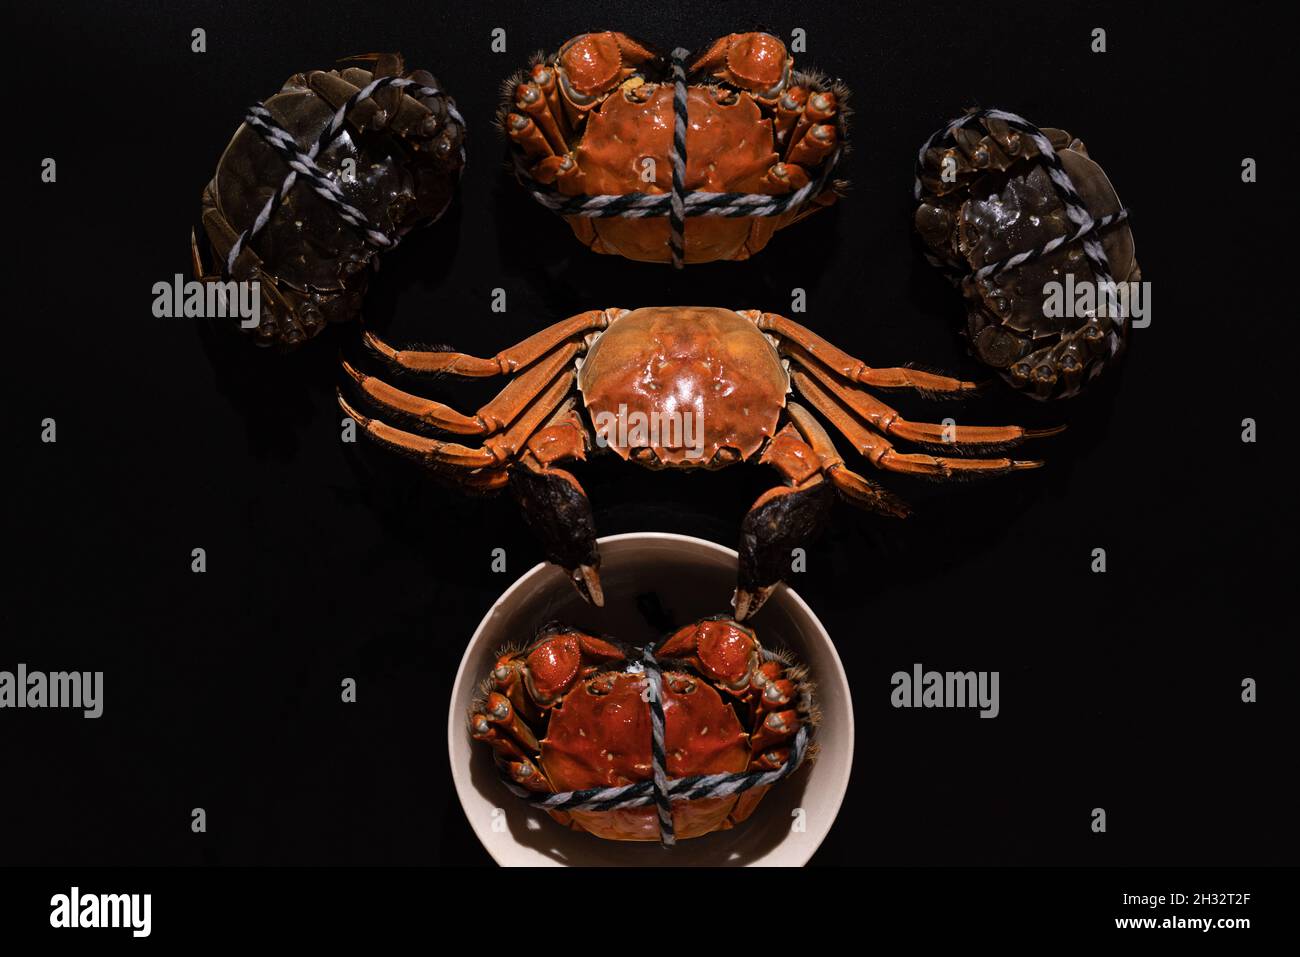 Crabe poilu bouilli de Shanghai ou crabe chinois (Eriocheir sinensis) Avec Chili et herbe sur fond noir Banque D'Images